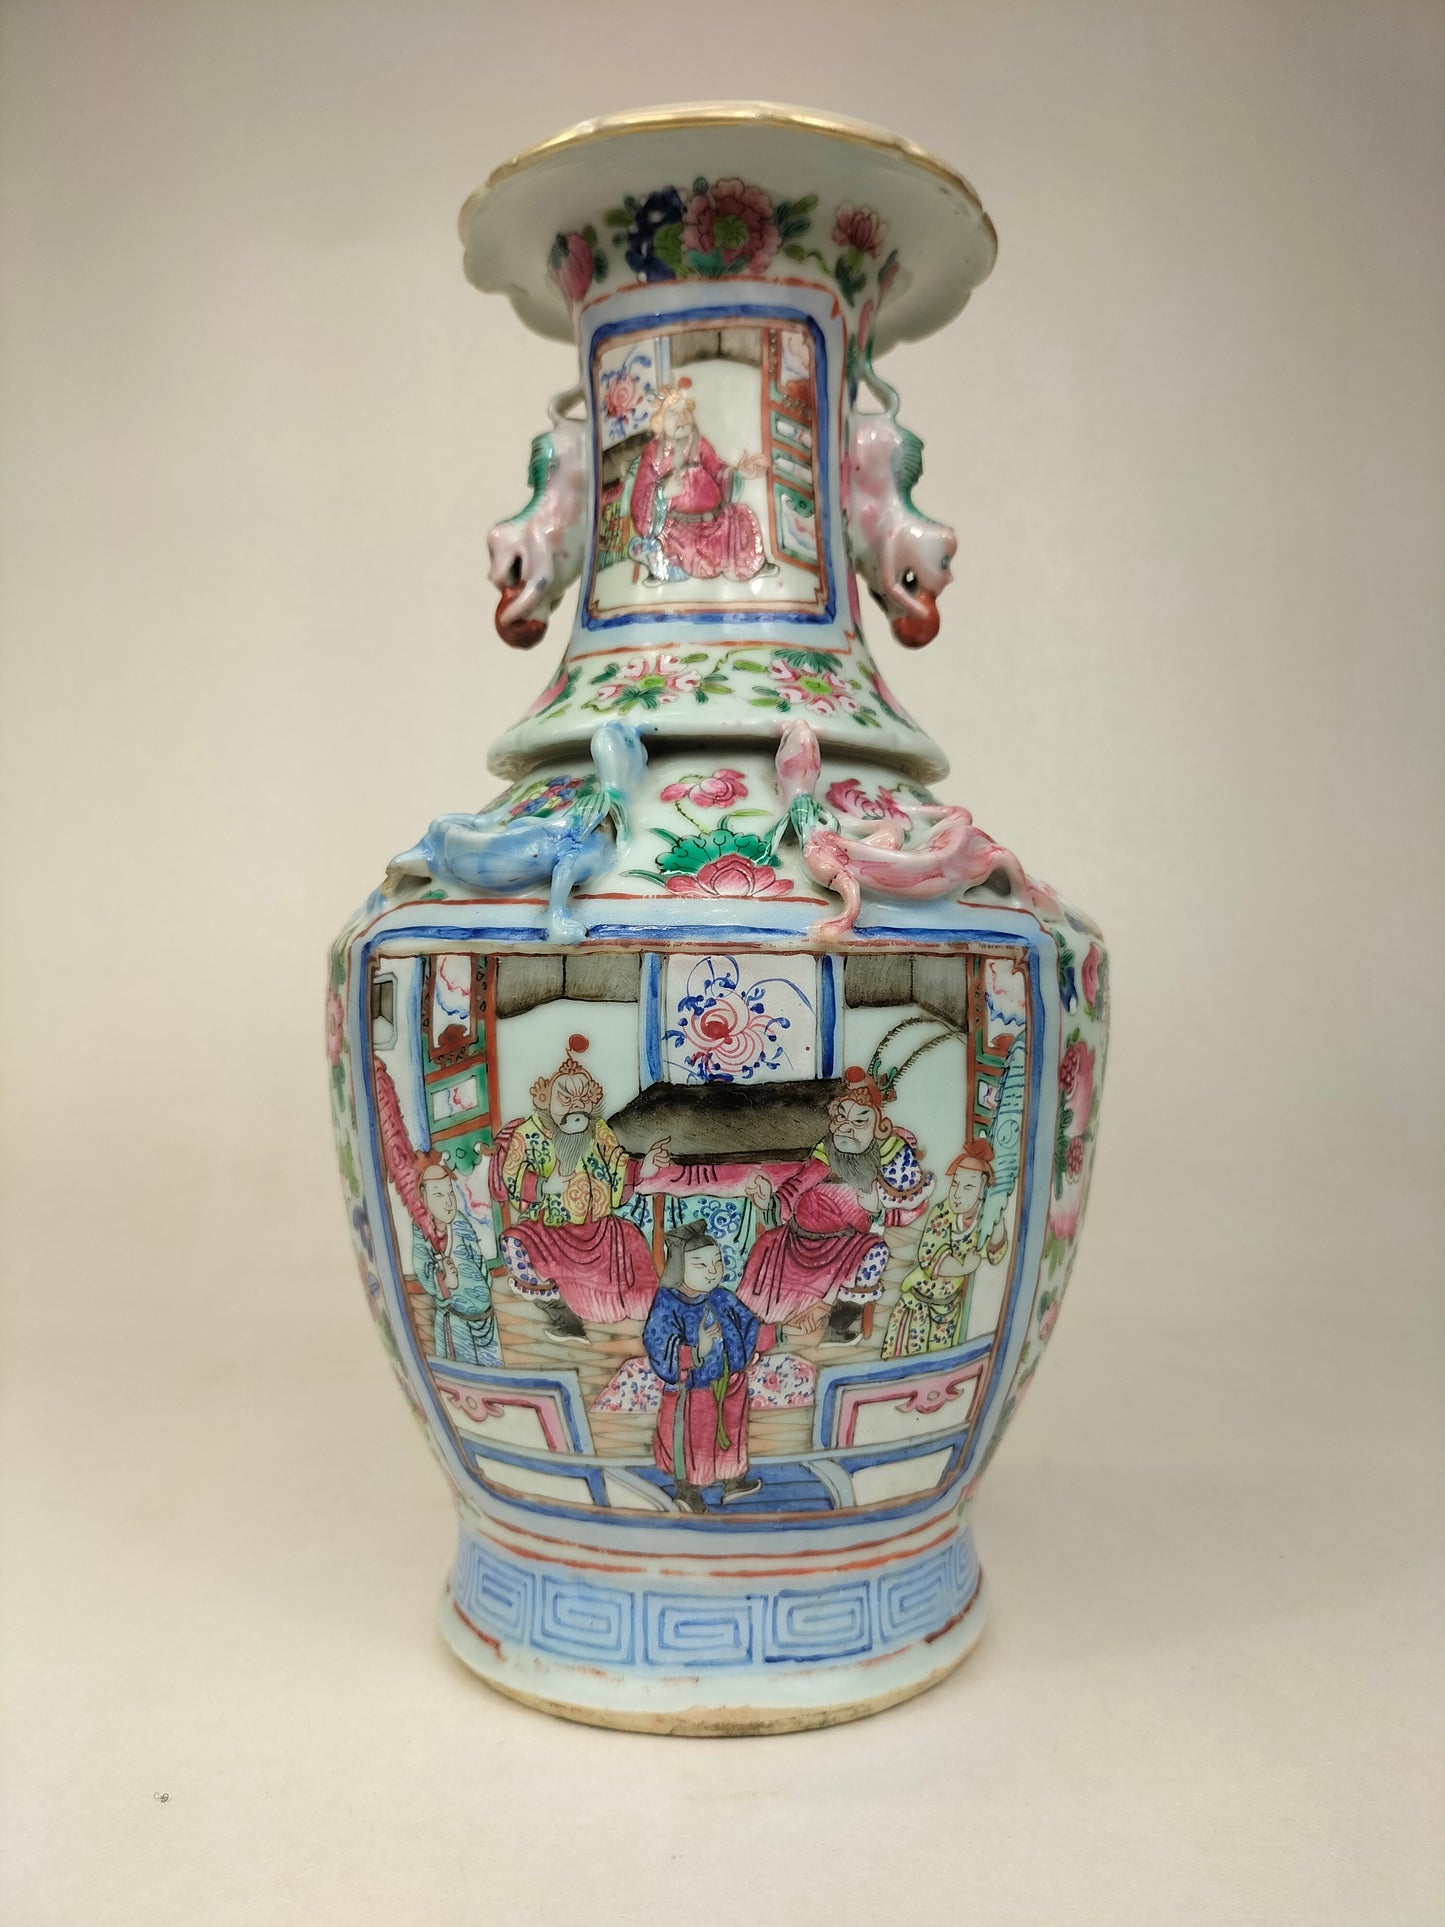 Chiếc bình cổ của Trung Quốc được trang trí với khung cảnh Hoàng gia // Nhà Thanh - thế kỷ 19